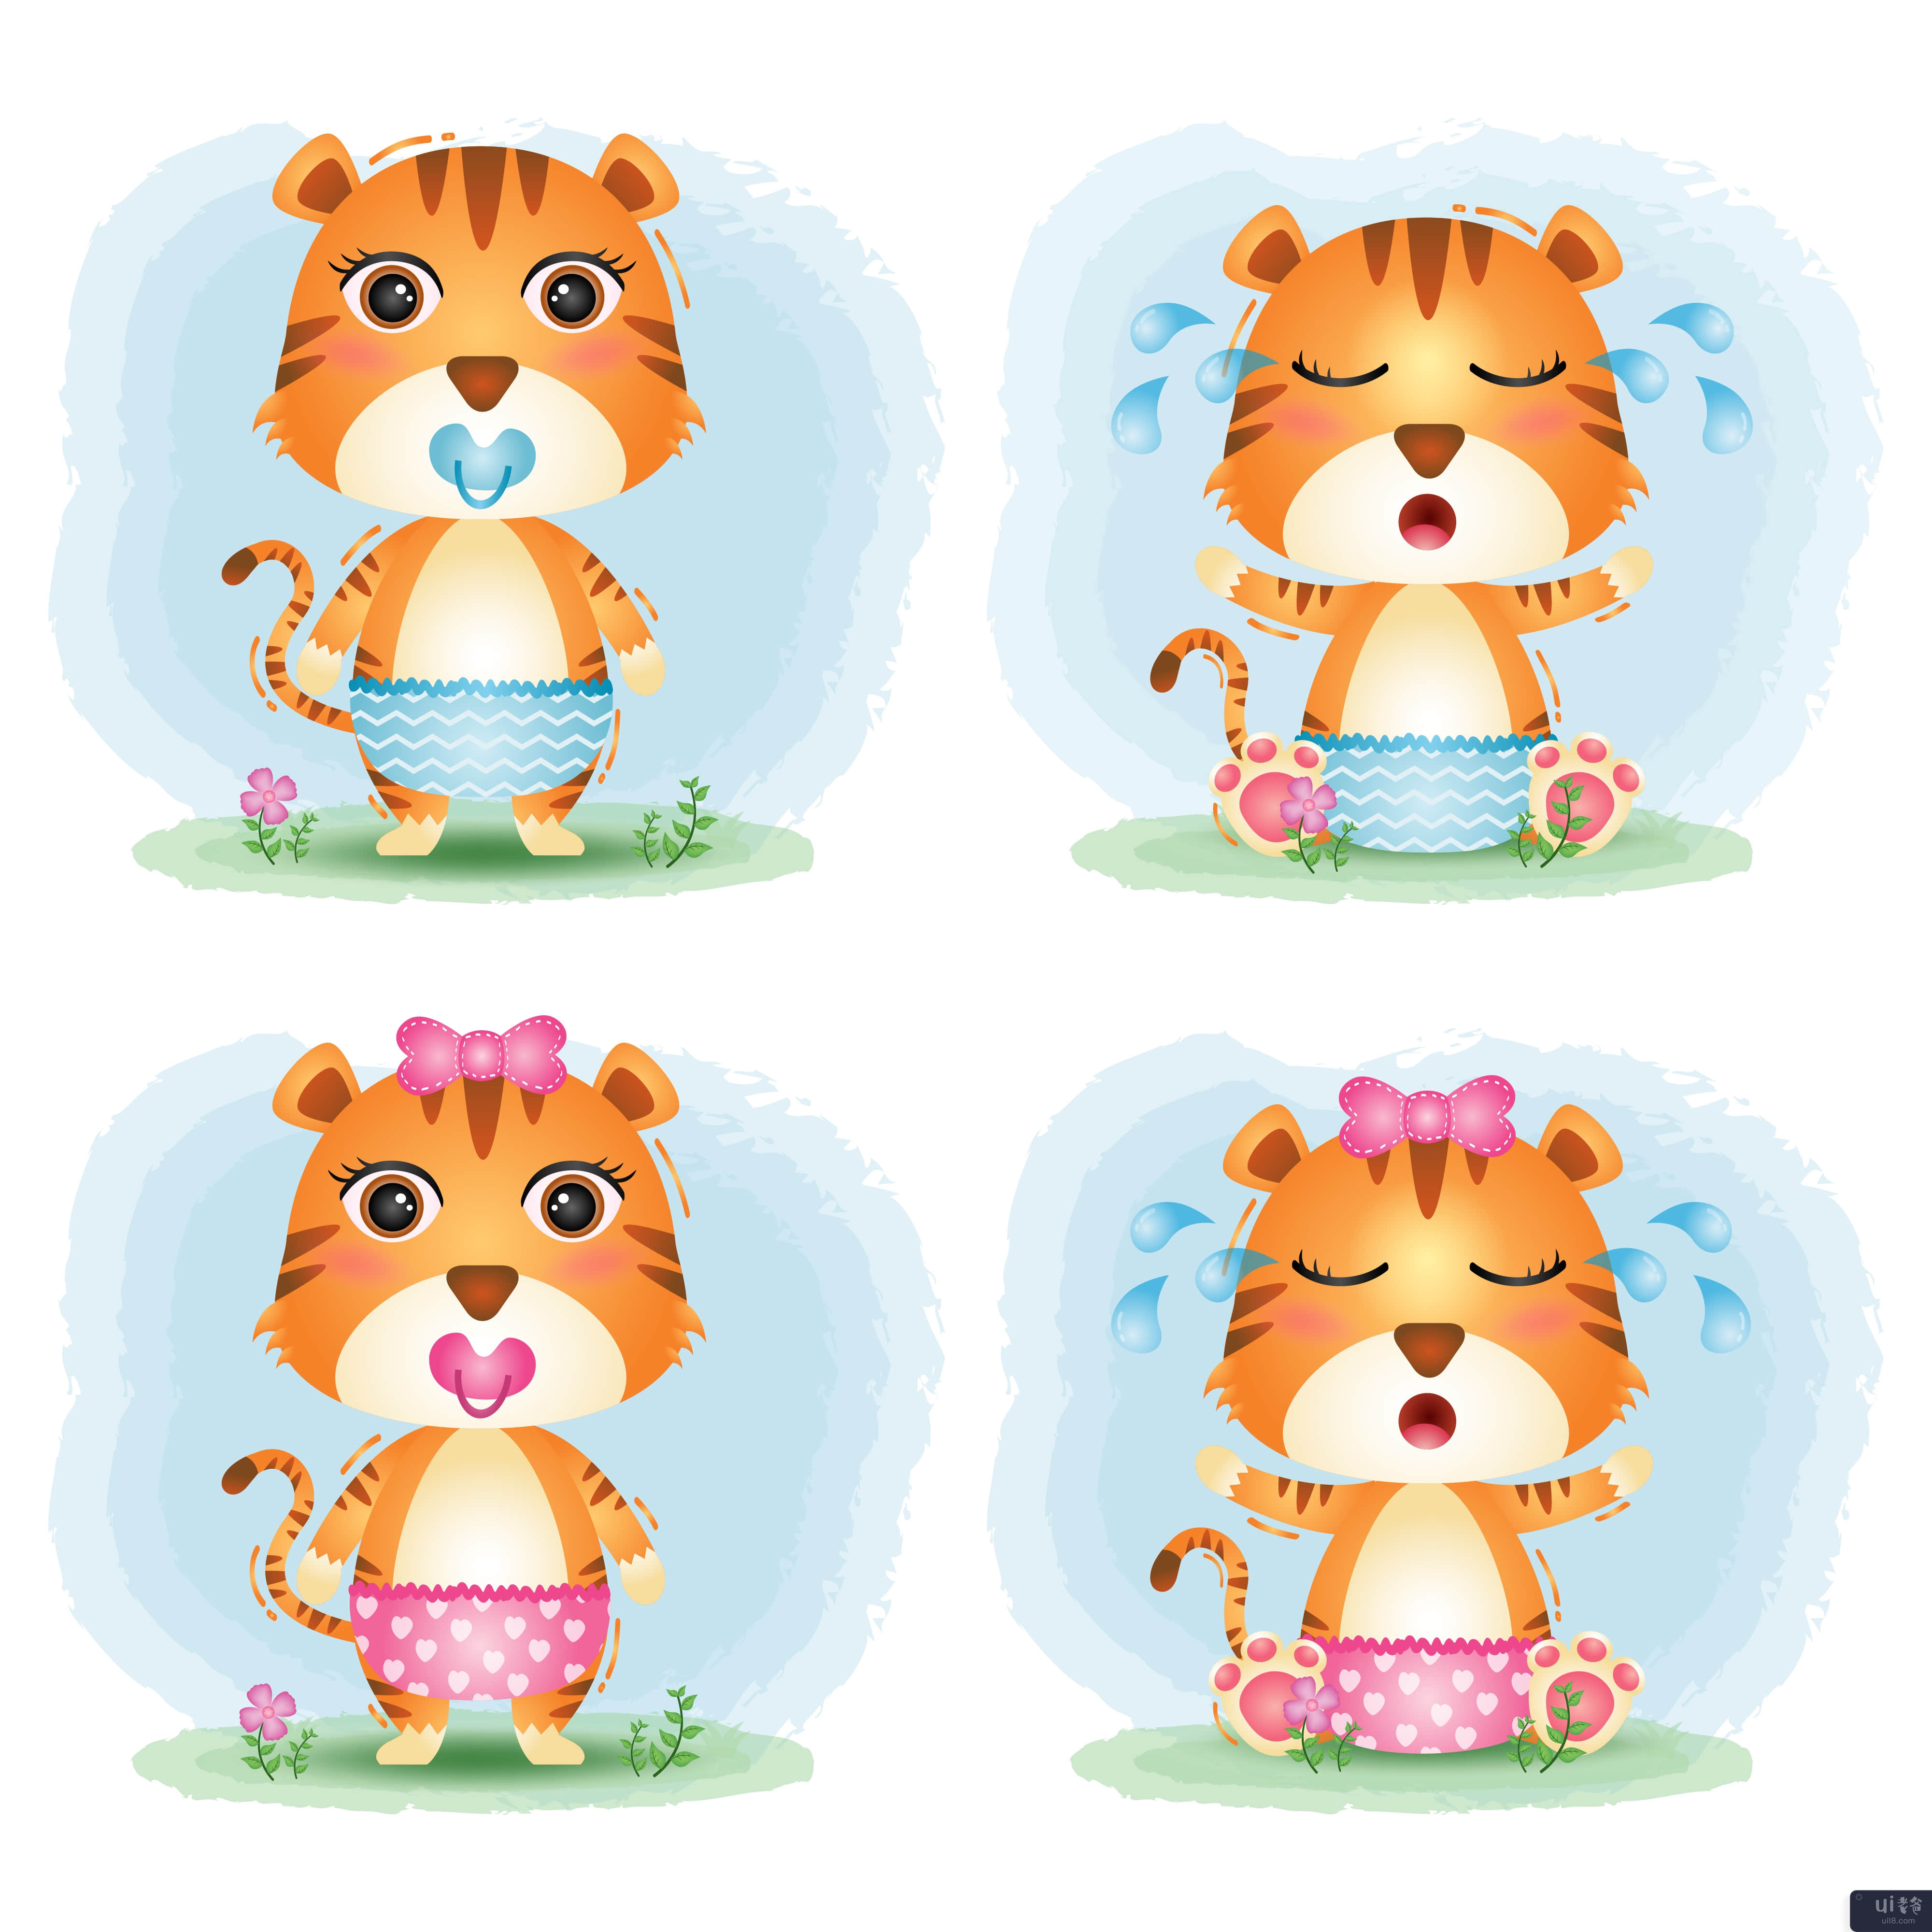 儿童风格的可爱小老虎系列(cute baby tiger collection in the children's style)插图2